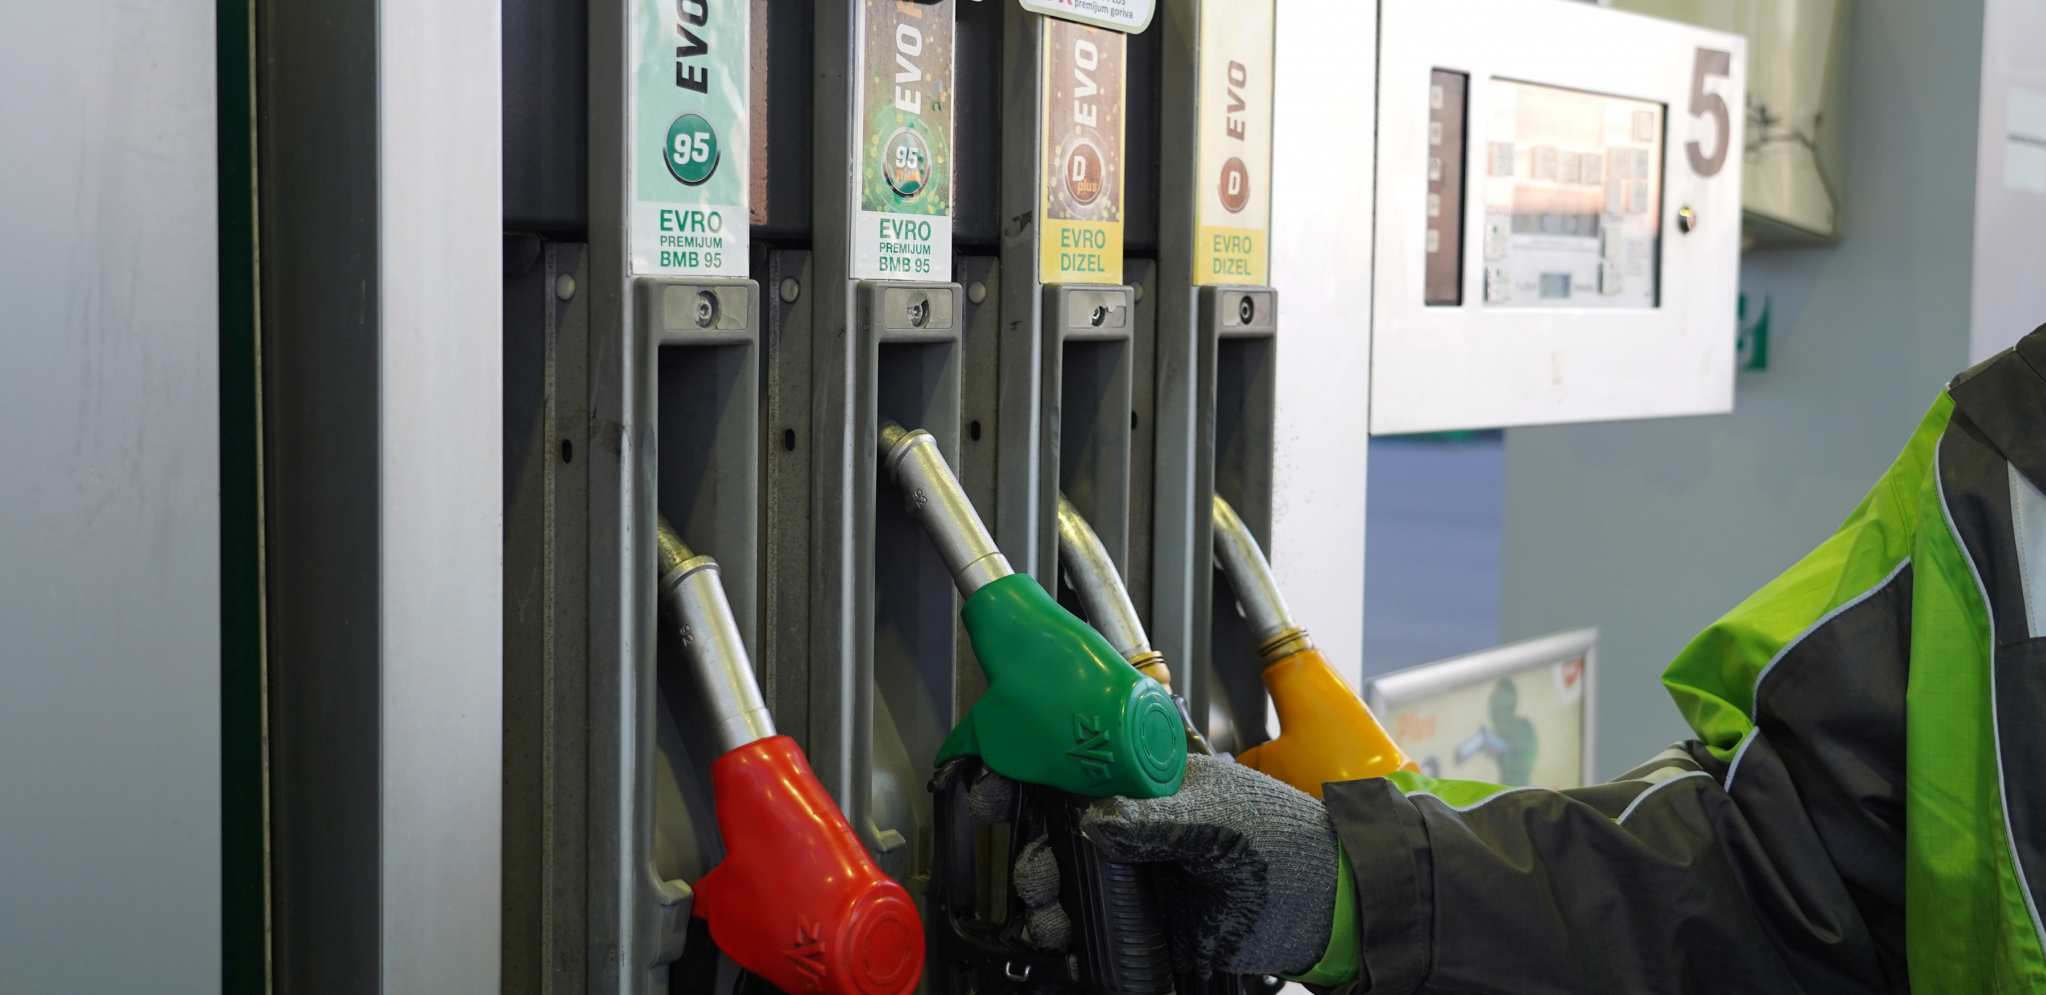 NOVE CENE GORIVA NA PUMPAMA Evo koliko će koštati dizel i benzin u narednih sedam dana